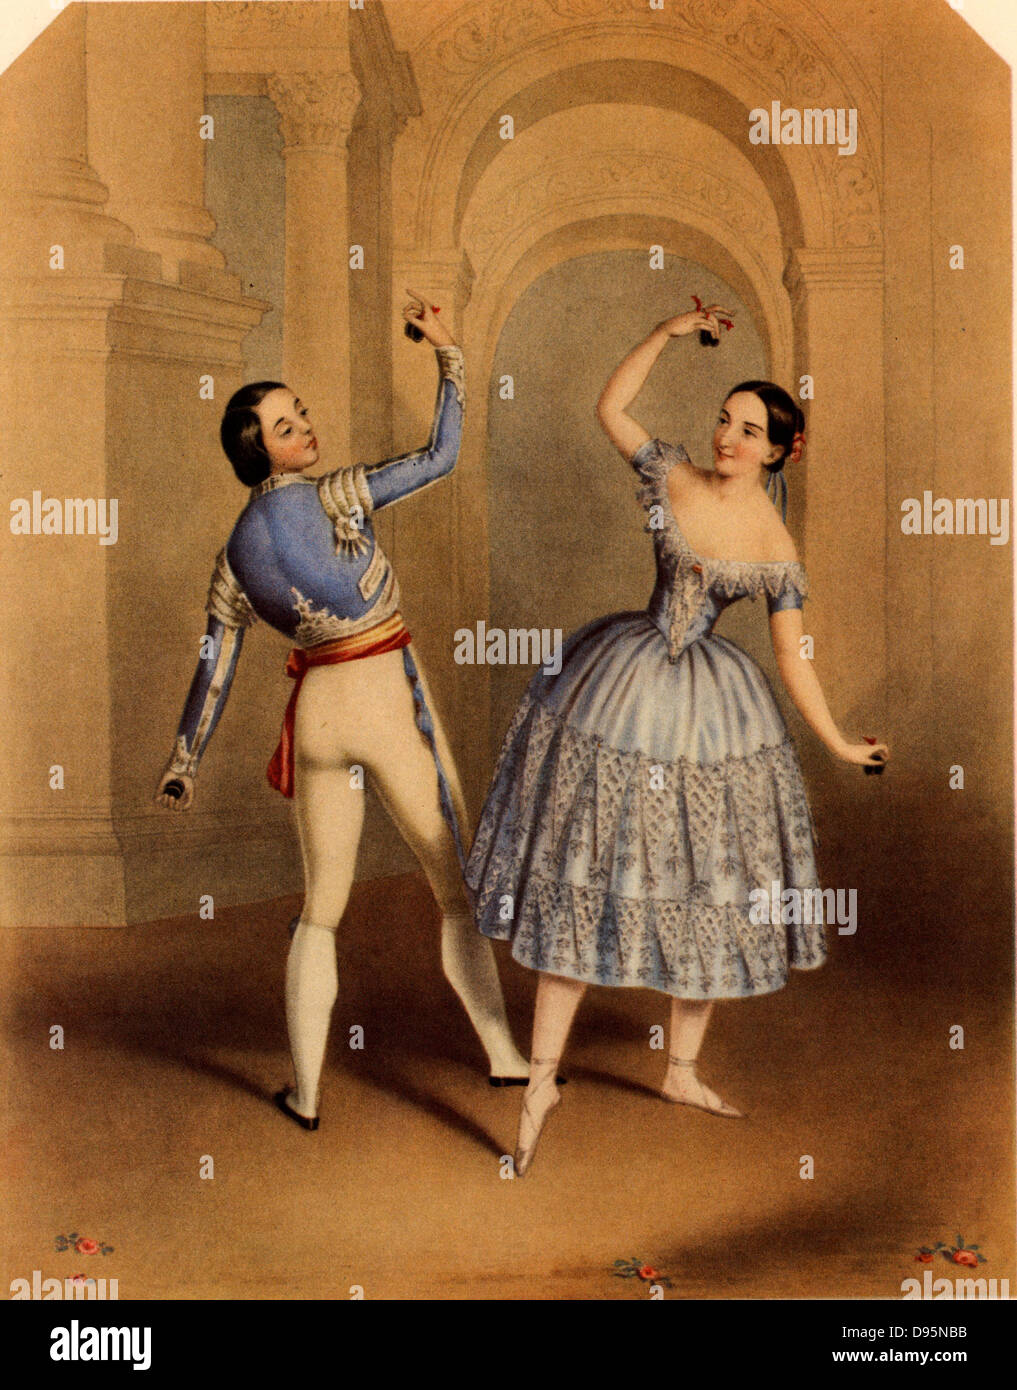 Balletto italiano immagini e fotografie stock ad alta risoluzione - Alamy